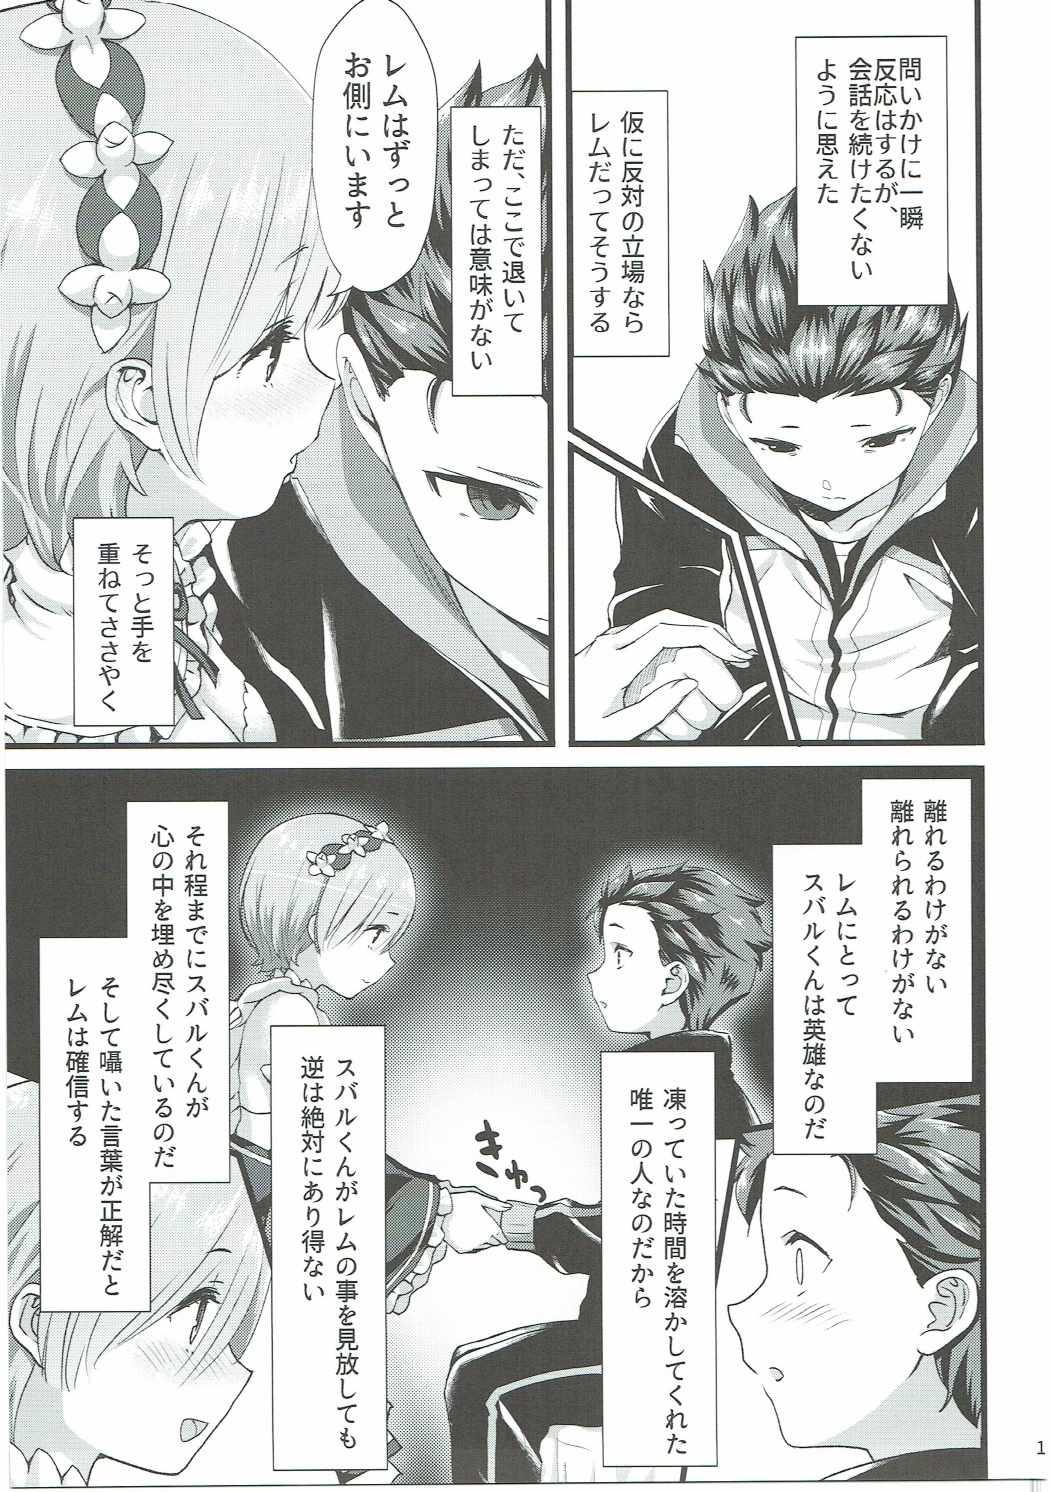 Piroca Oni no Shoujo - Re zero kara hajimeru isekai seikatsu Tesao - Page 10